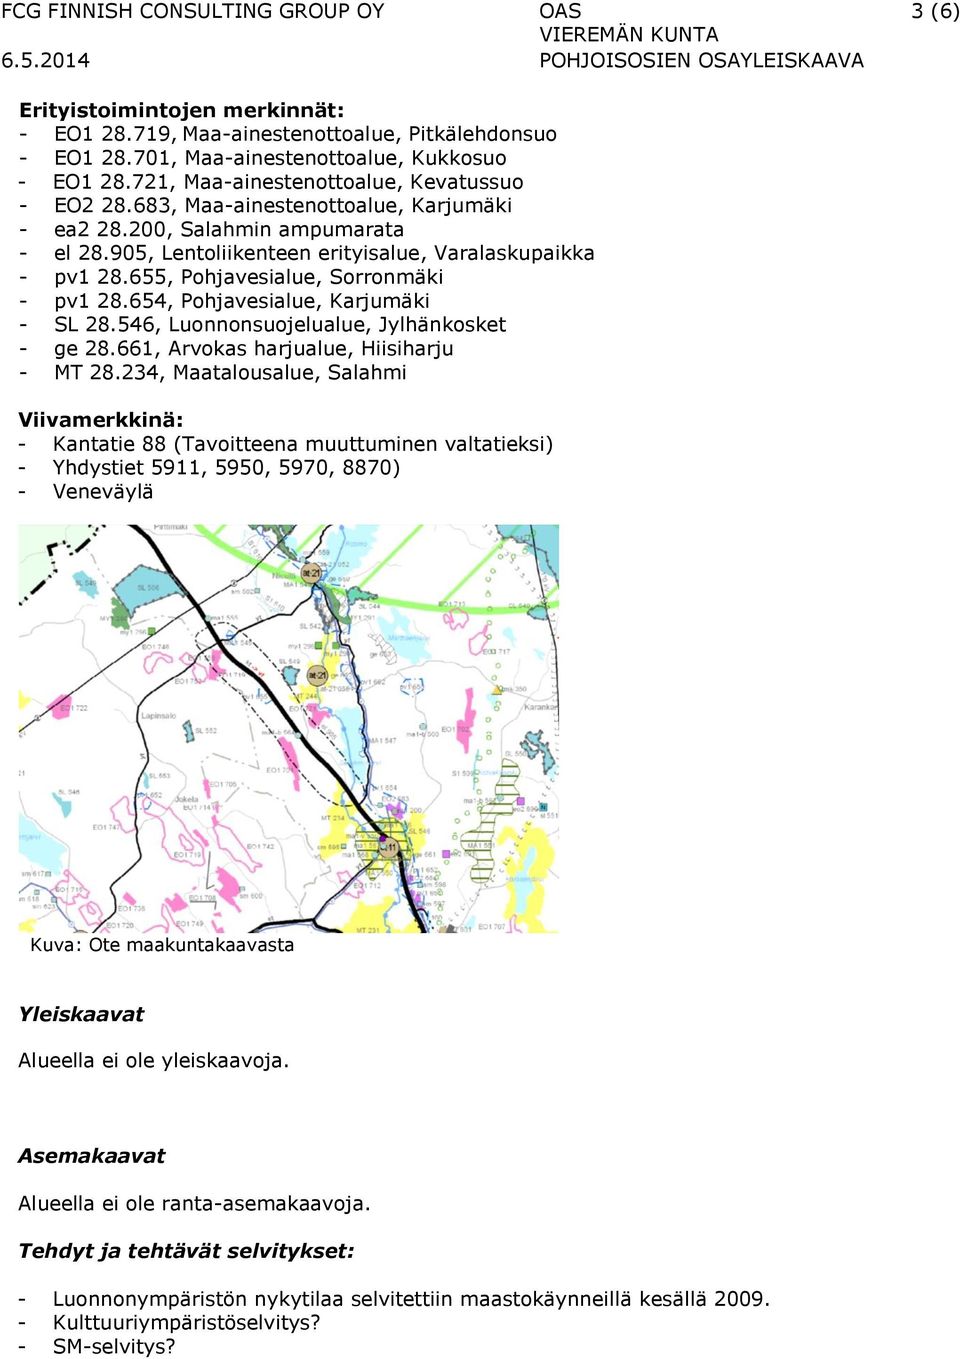 655, Pohjavesialue, Sorronmäki - pv1 28.654, Pohjavesialue, Karjumäki - SL 28.546, Luonnonsuojelualue, Jylhänkosket - ge 28.661, Arvokas harjualue, Hiisiharju - MT 28.